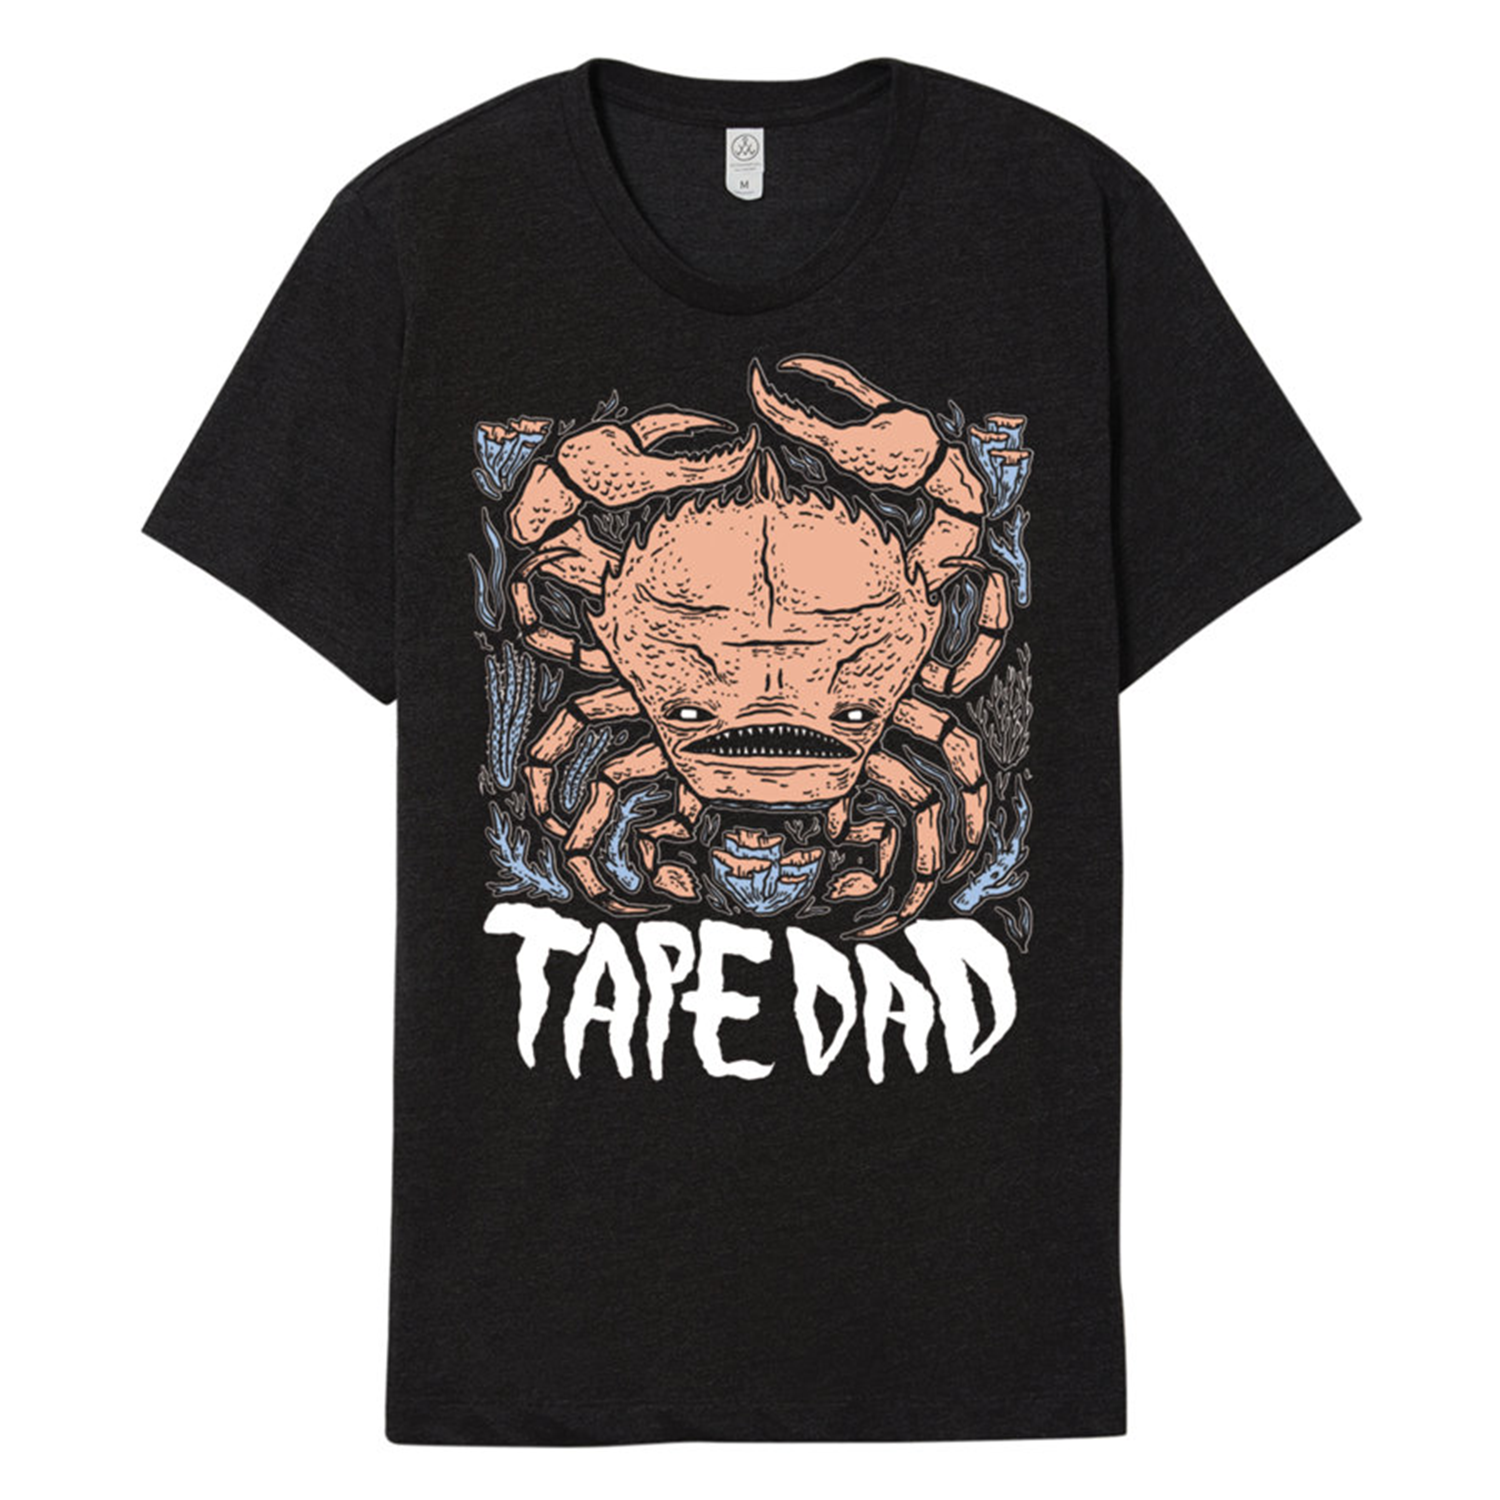 Tape Dad Crab Shirt